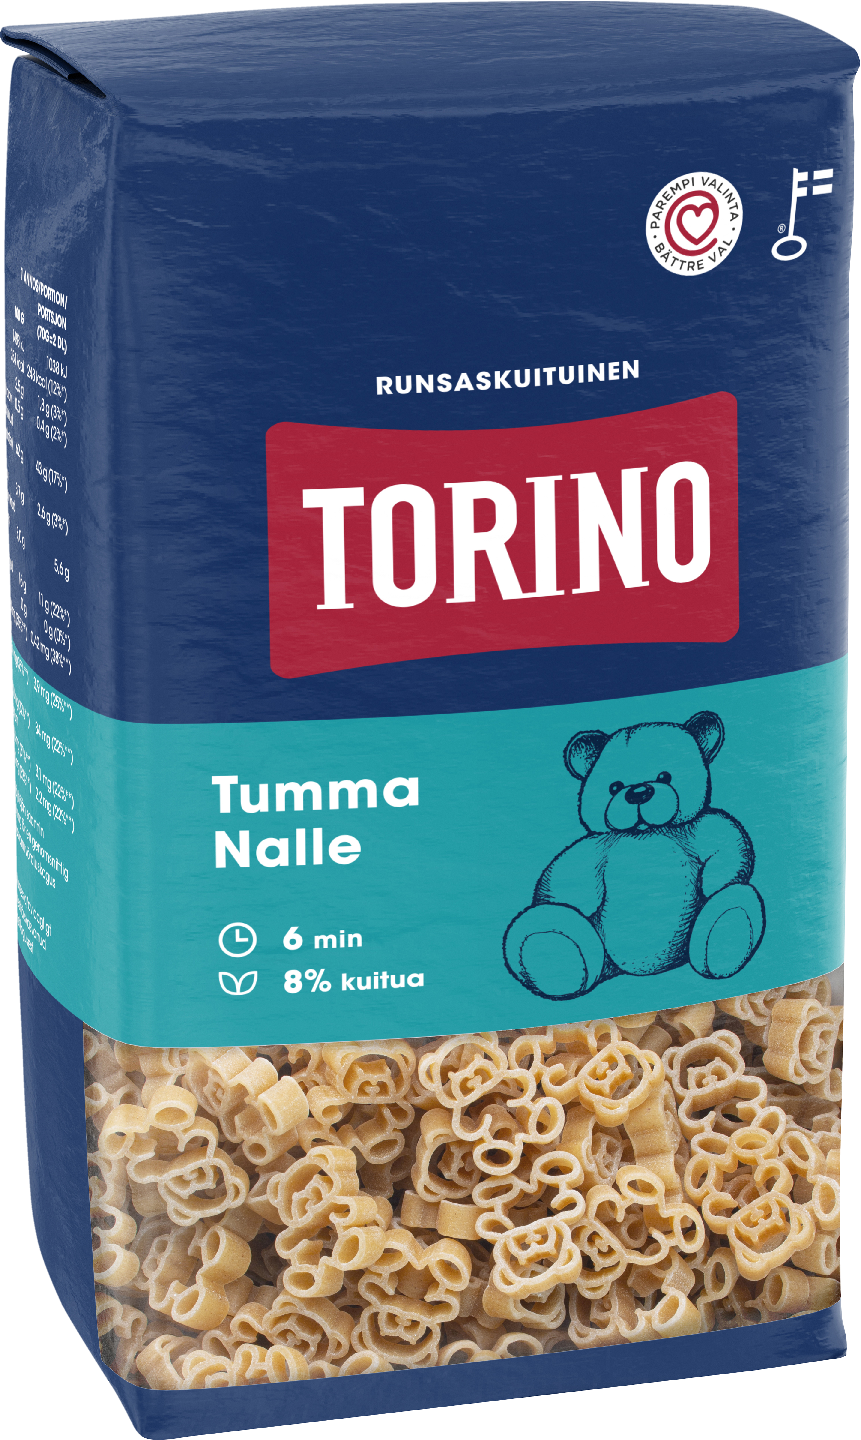 Torino tumma nalle pasta 500 g